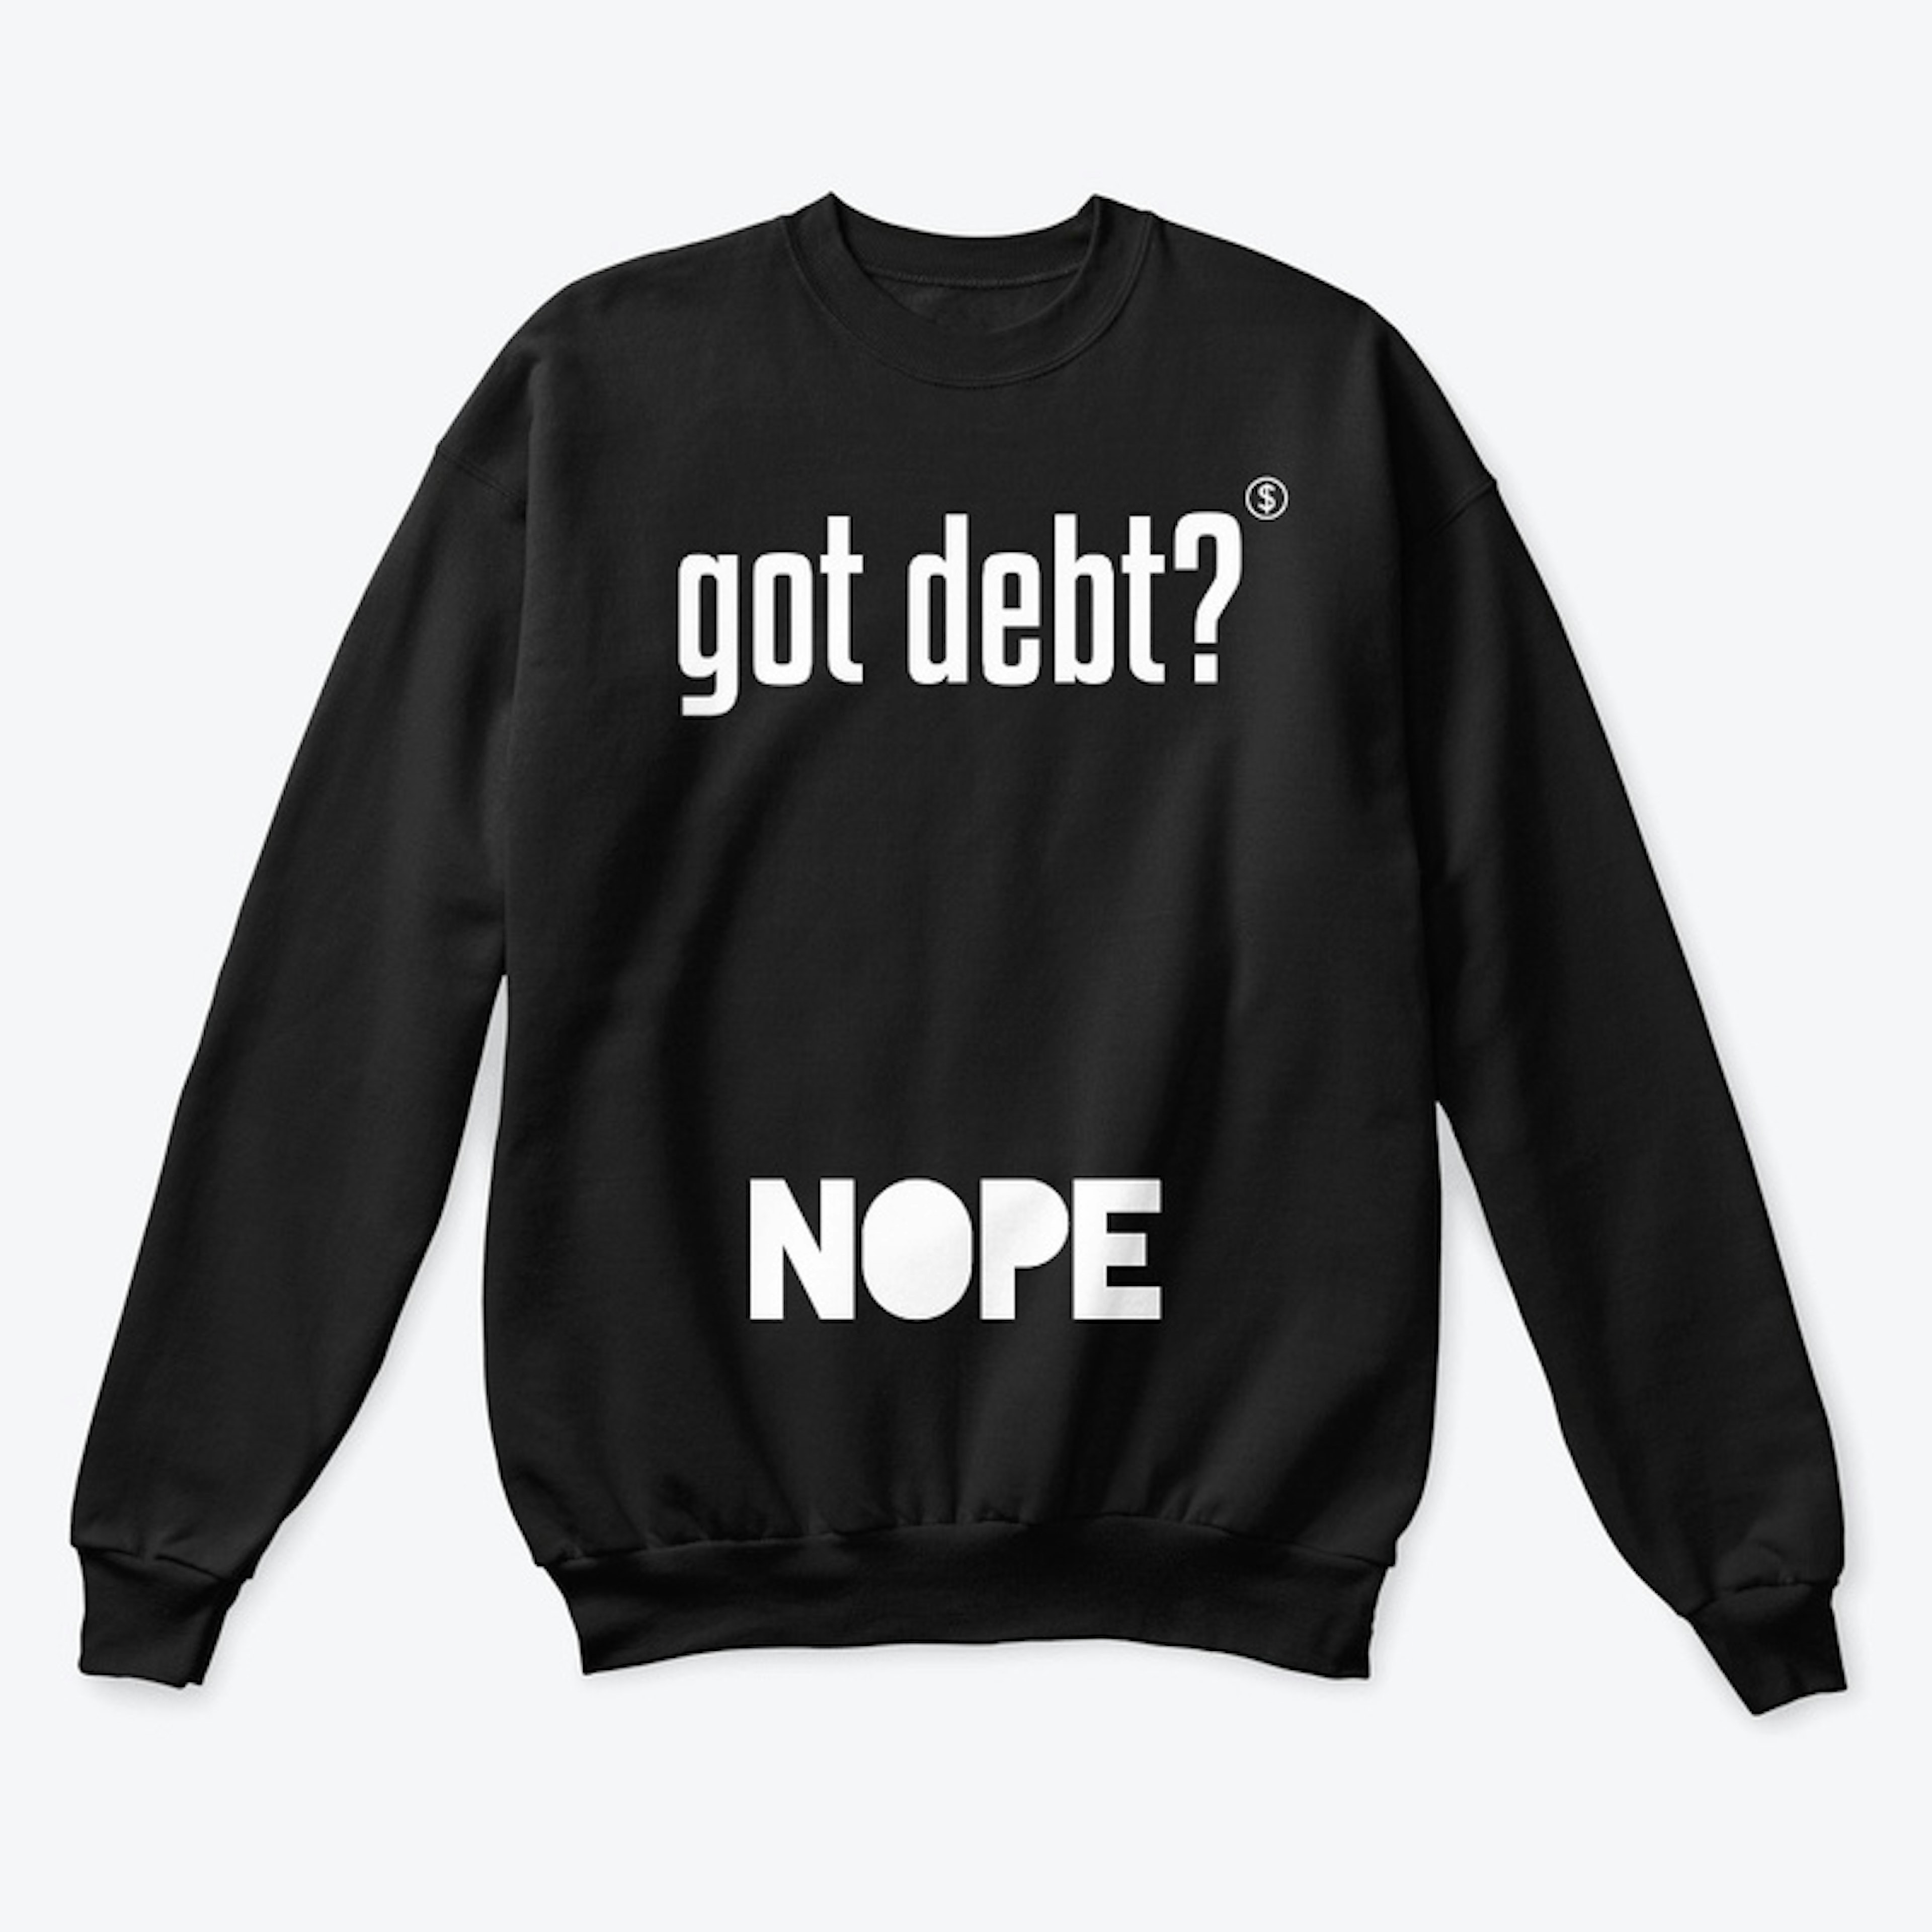 Got Debt? NOPE! Sweatshirt